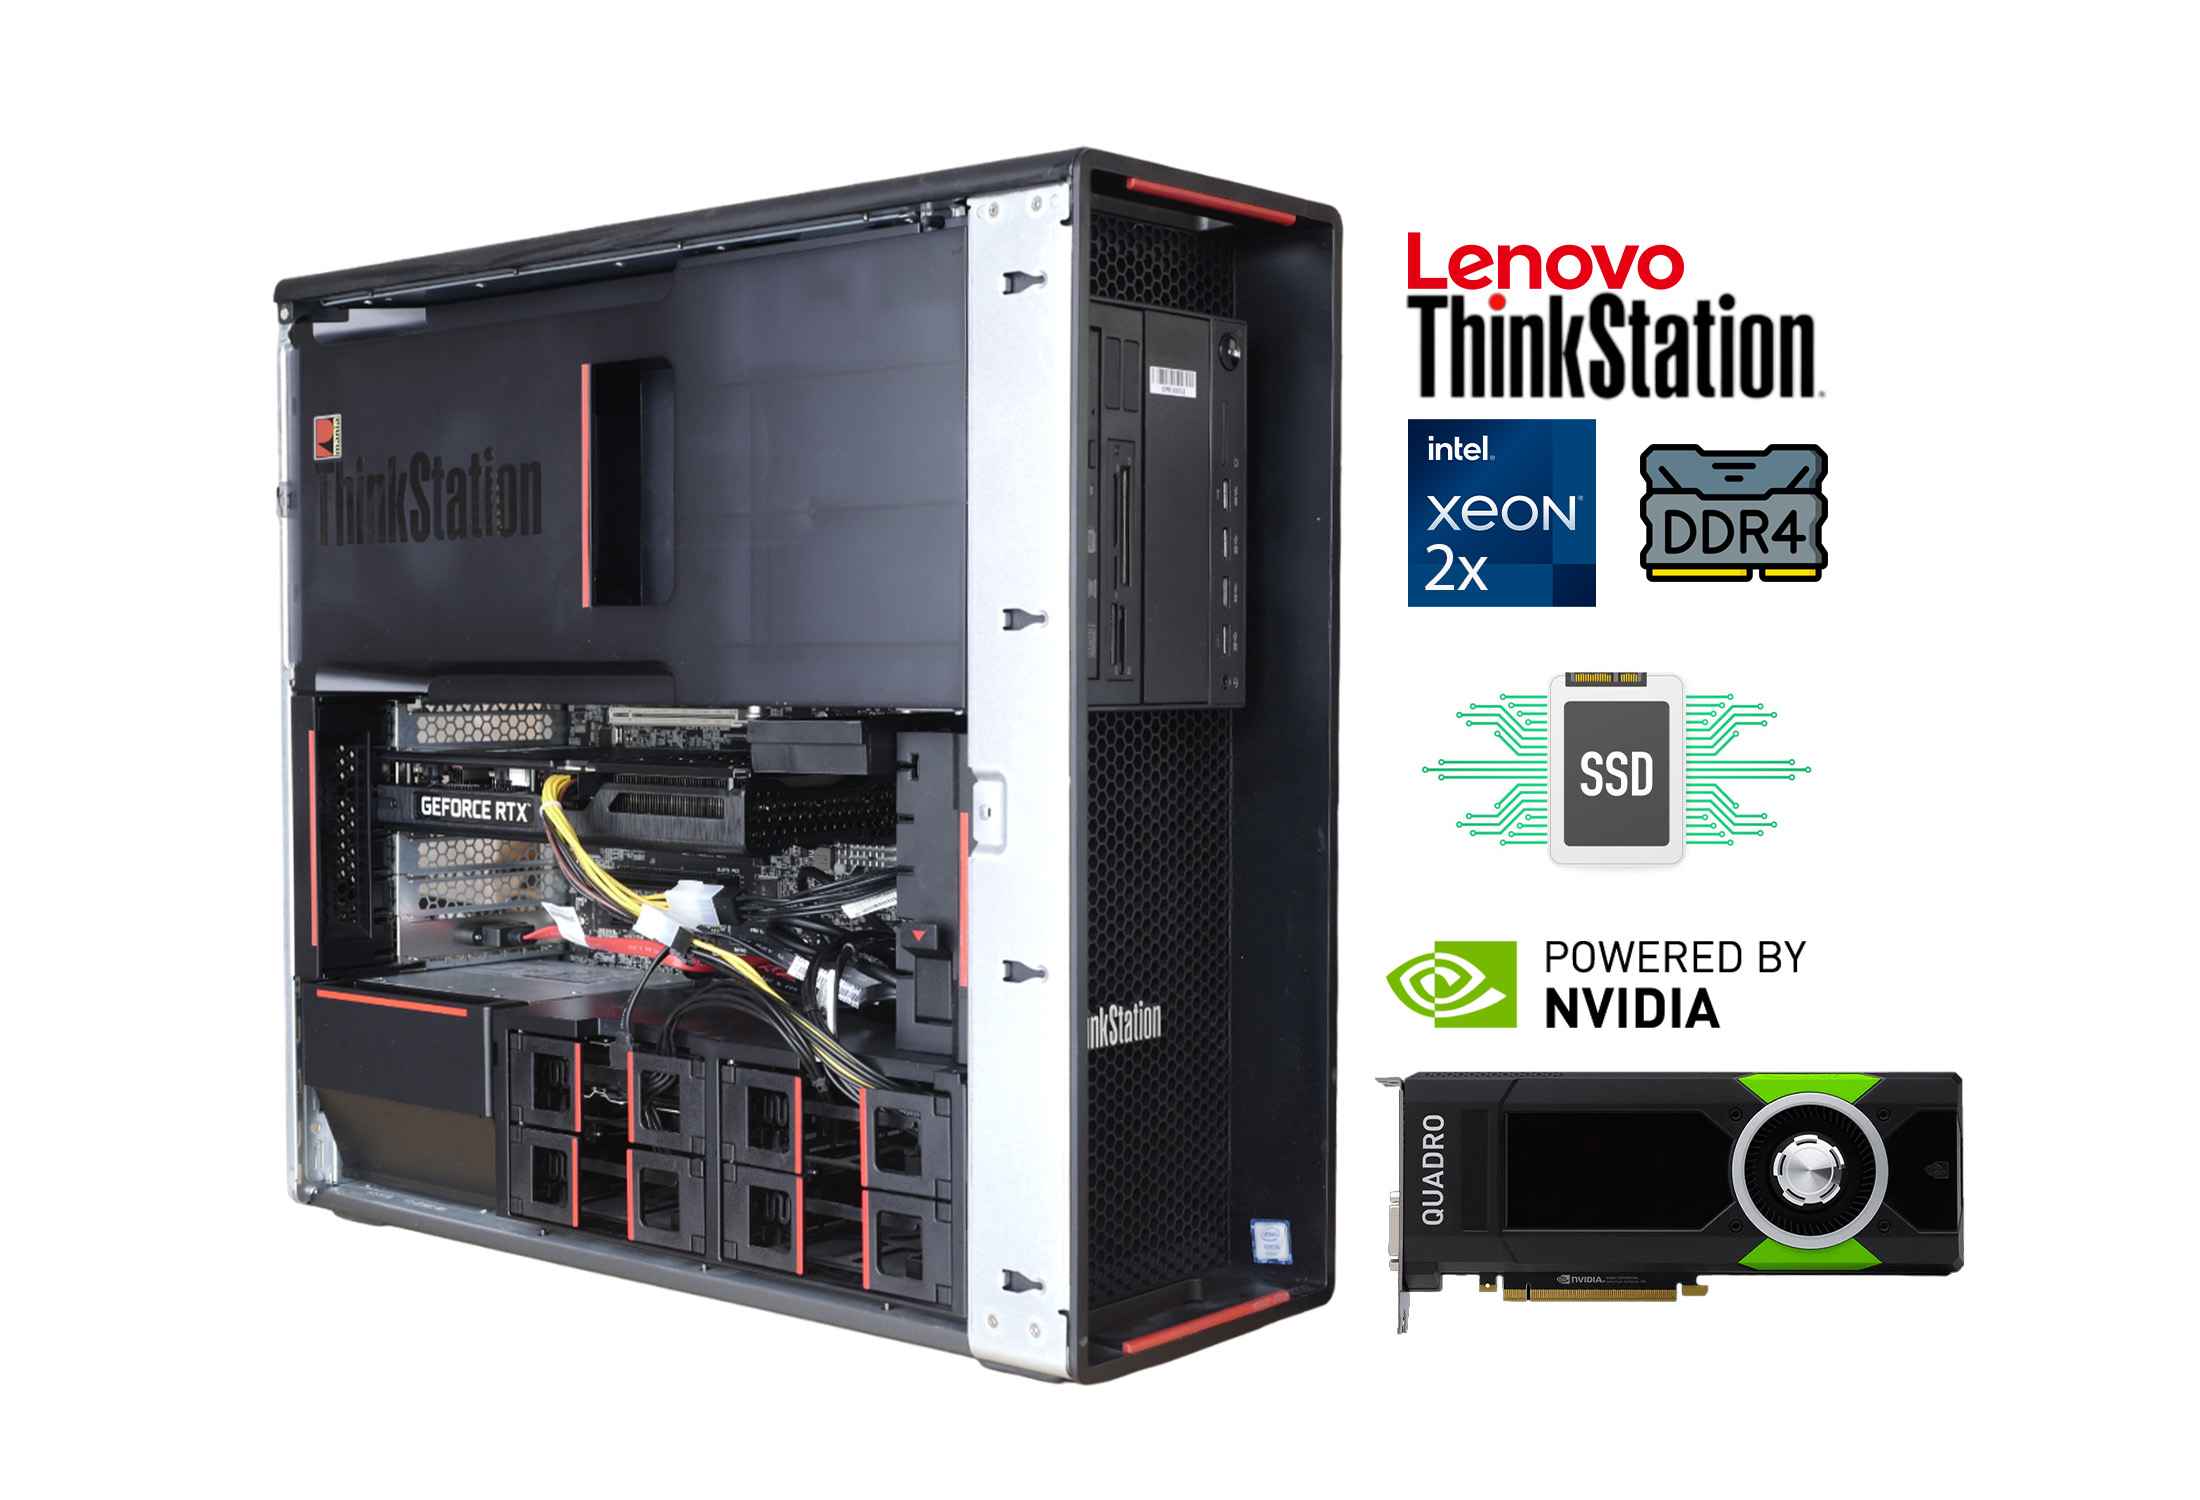 Lenovo Thinkstation P700 2x Xeon E5-2620v3 DDR4 SSD Quadro K620